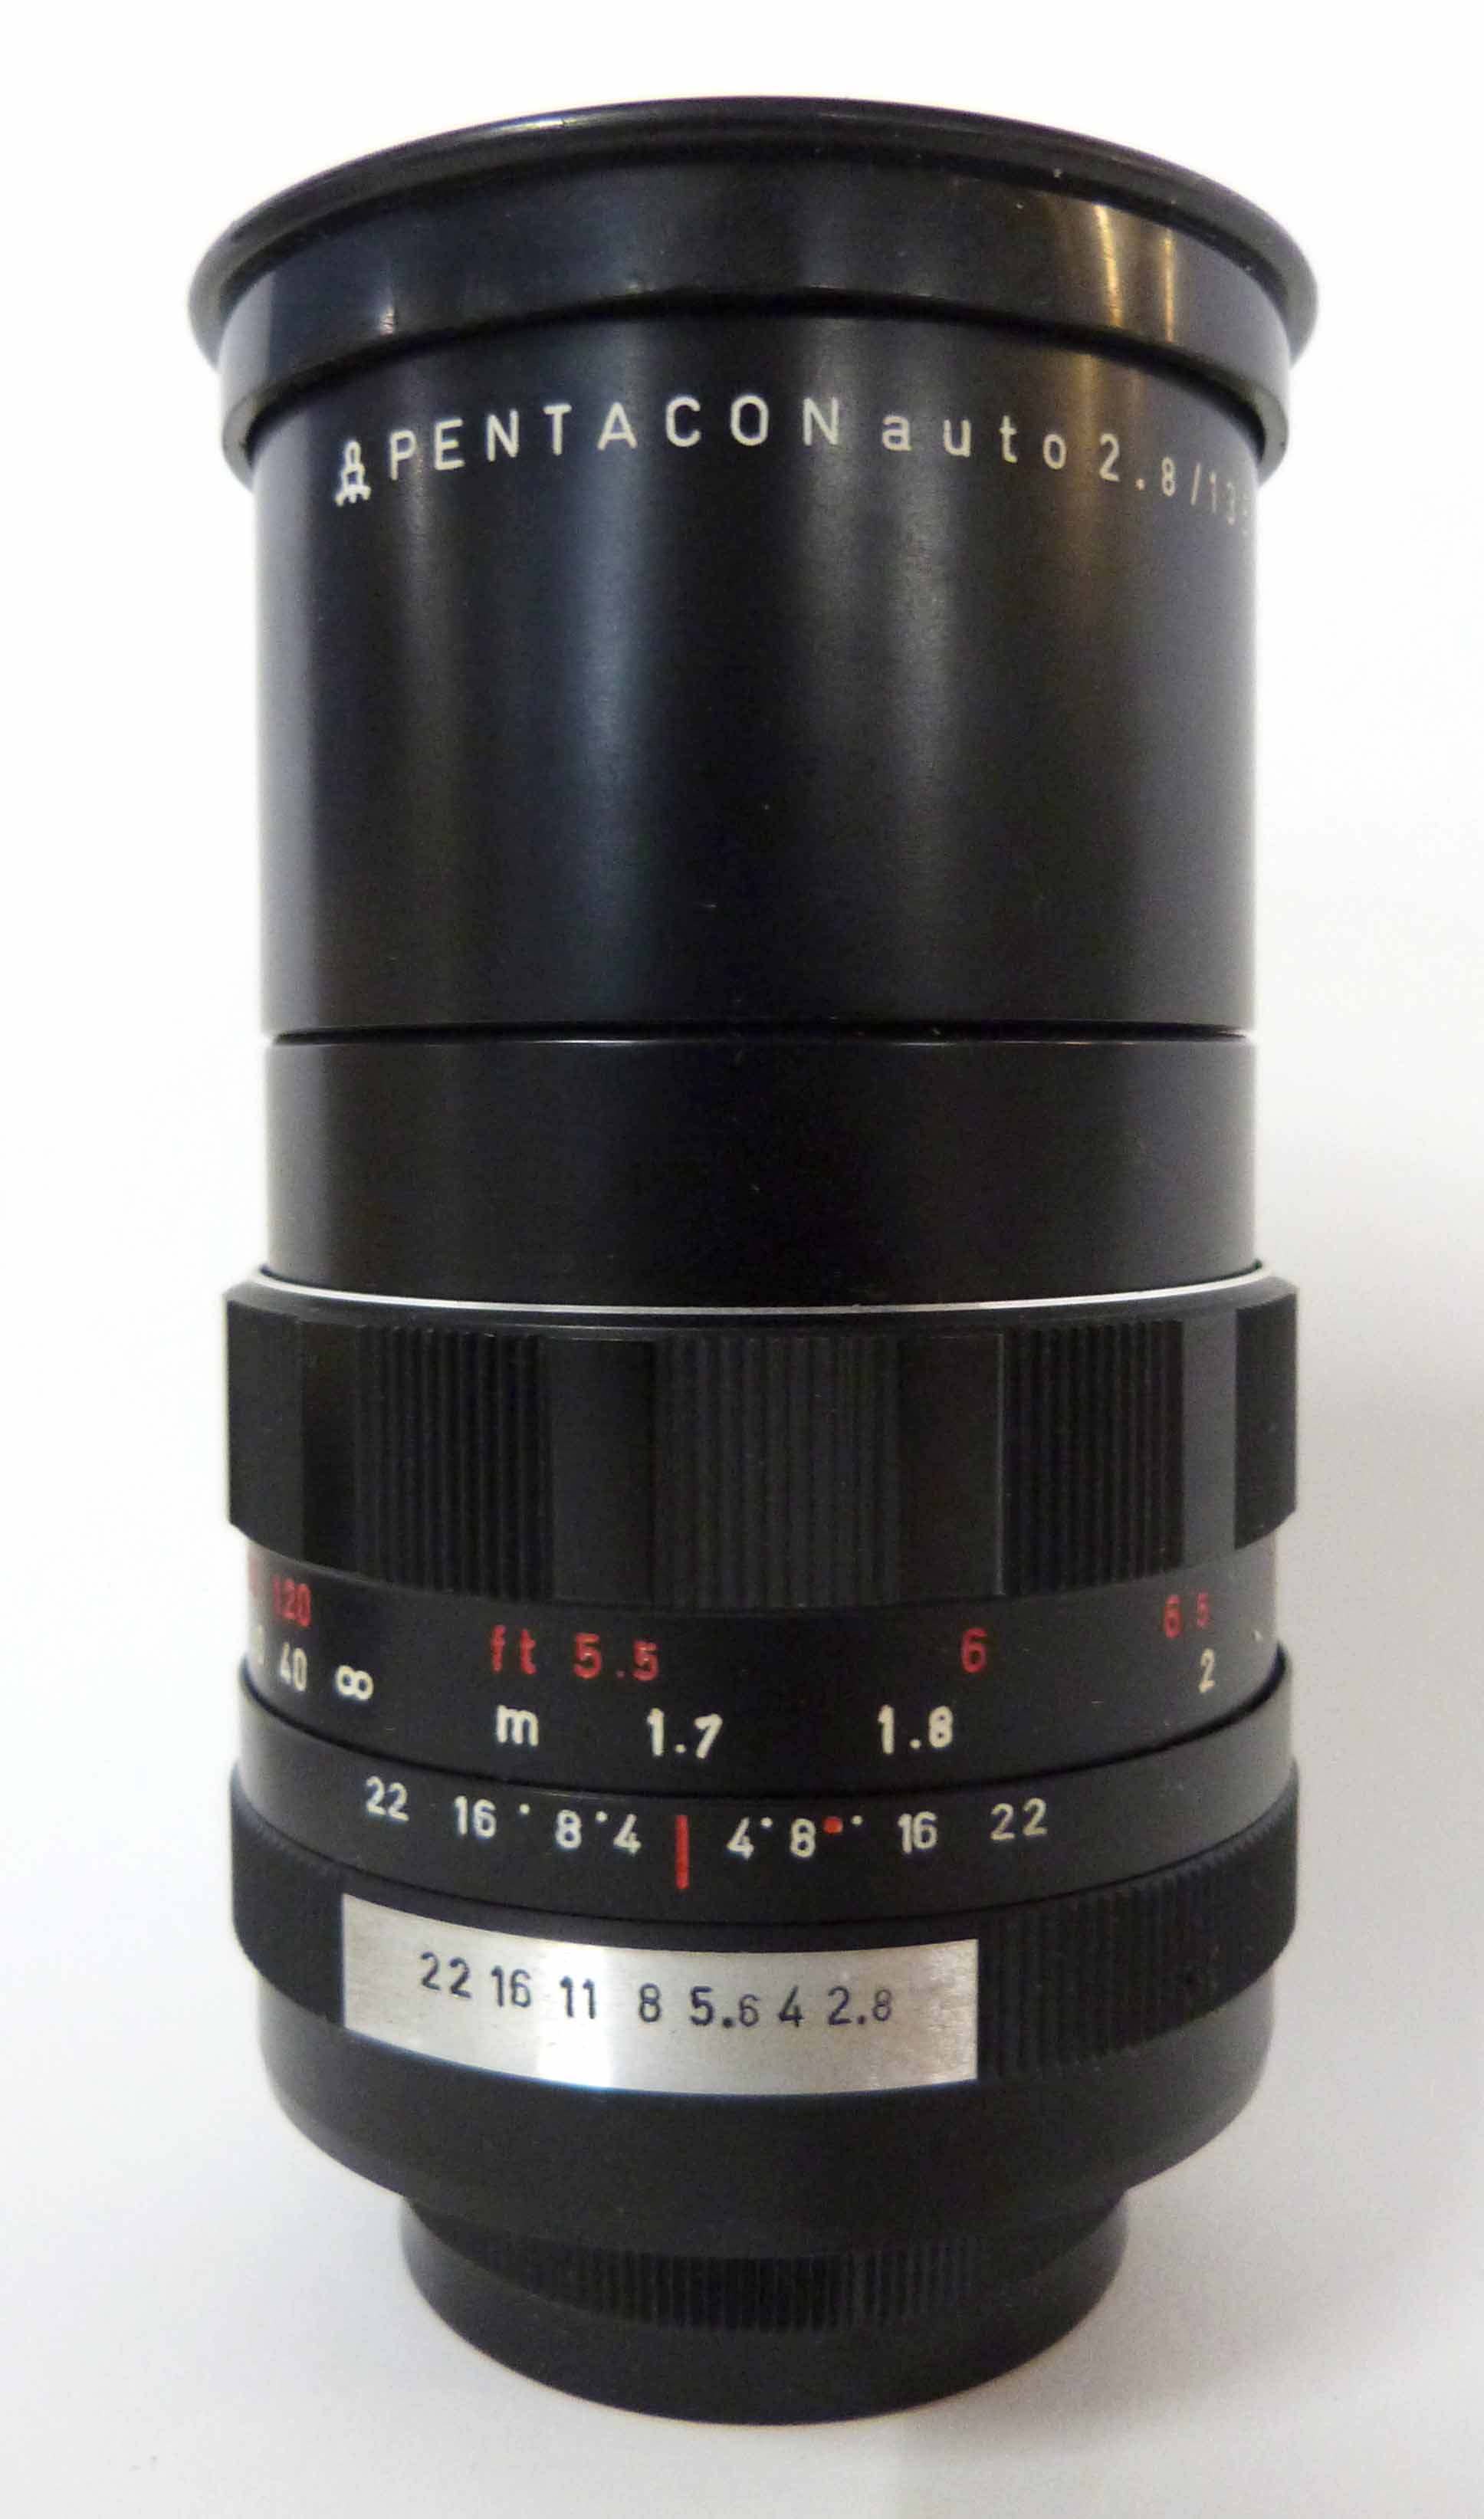 Pentacon Auto 2.8/135 lens with original box - Image 3 of 3